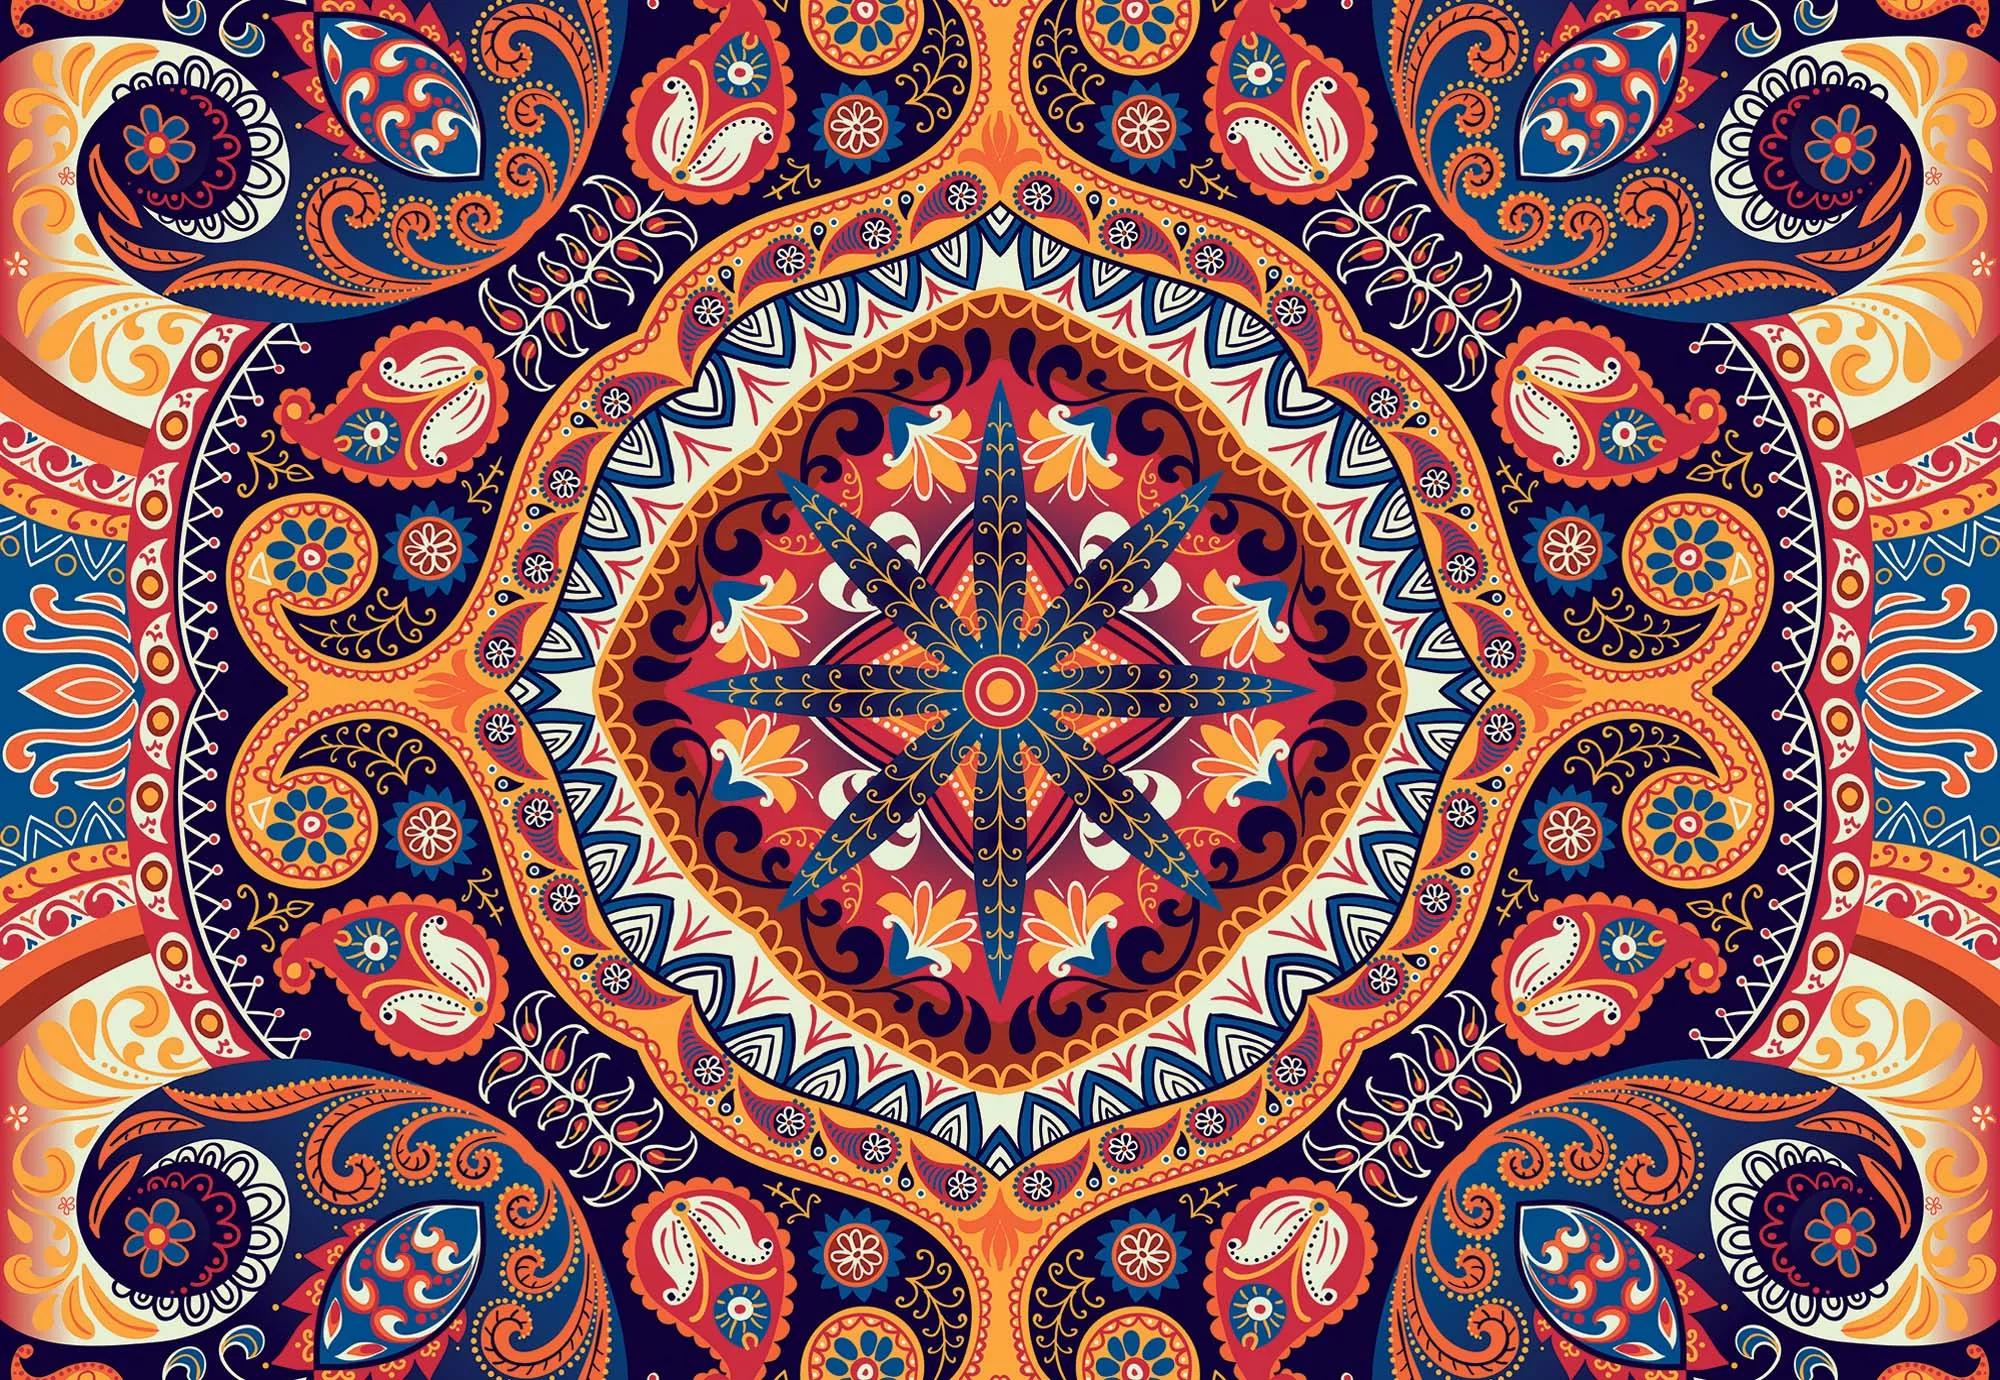 Fali poszter mandala mintával orientális keleties stílusban 368x254 vlies